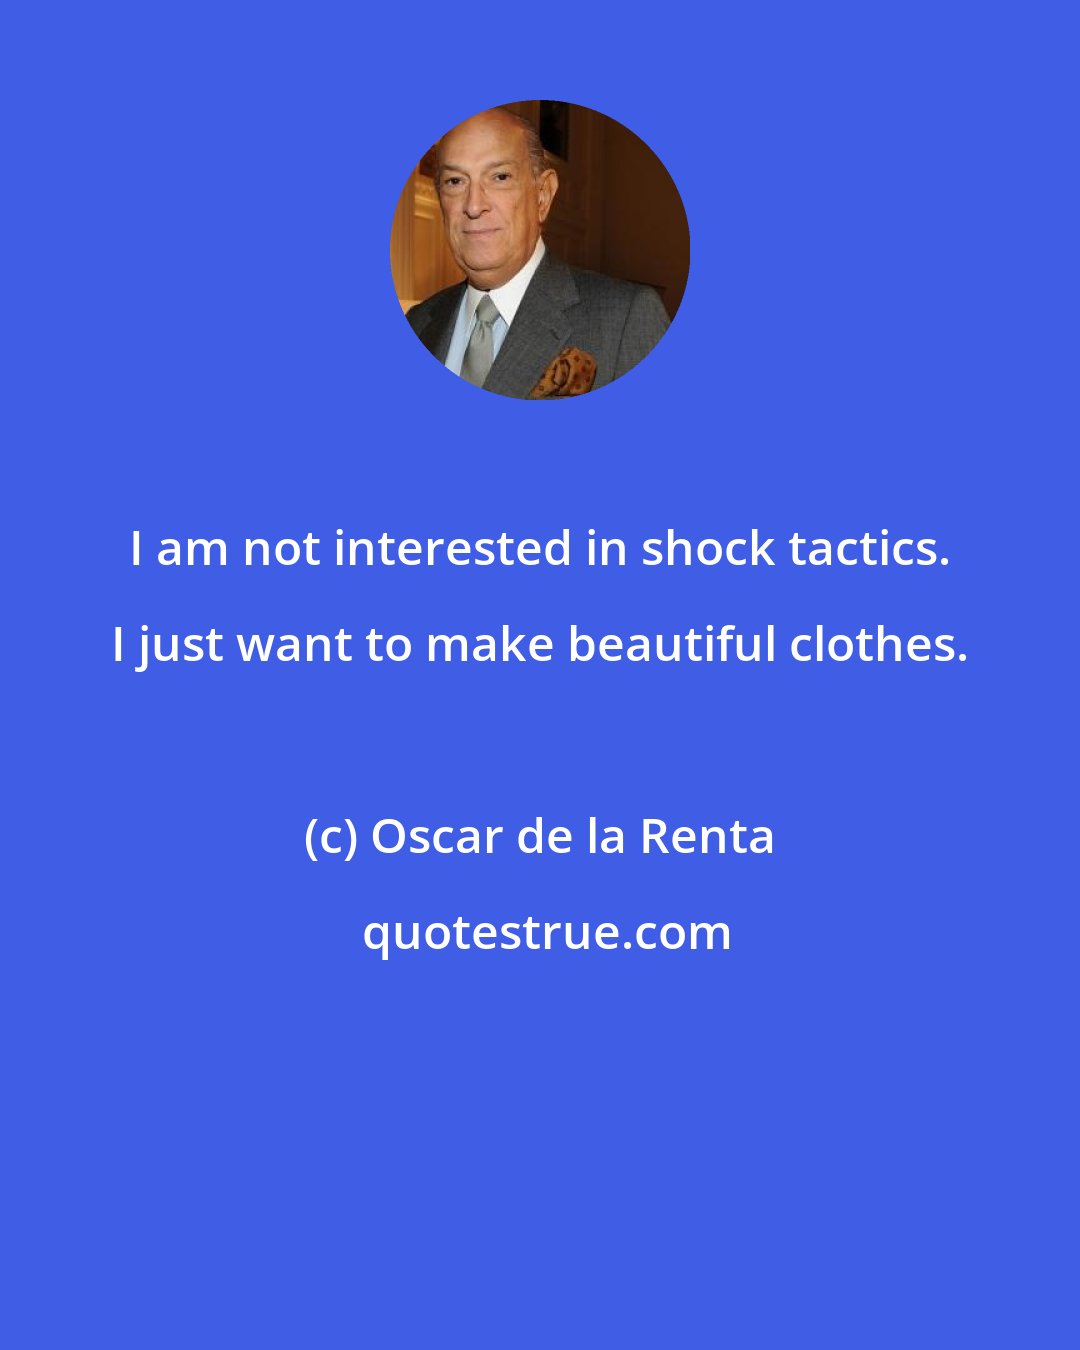 Oscar de la Renta: I am not interested in shock tactics. I just want to make beautiful clothes.